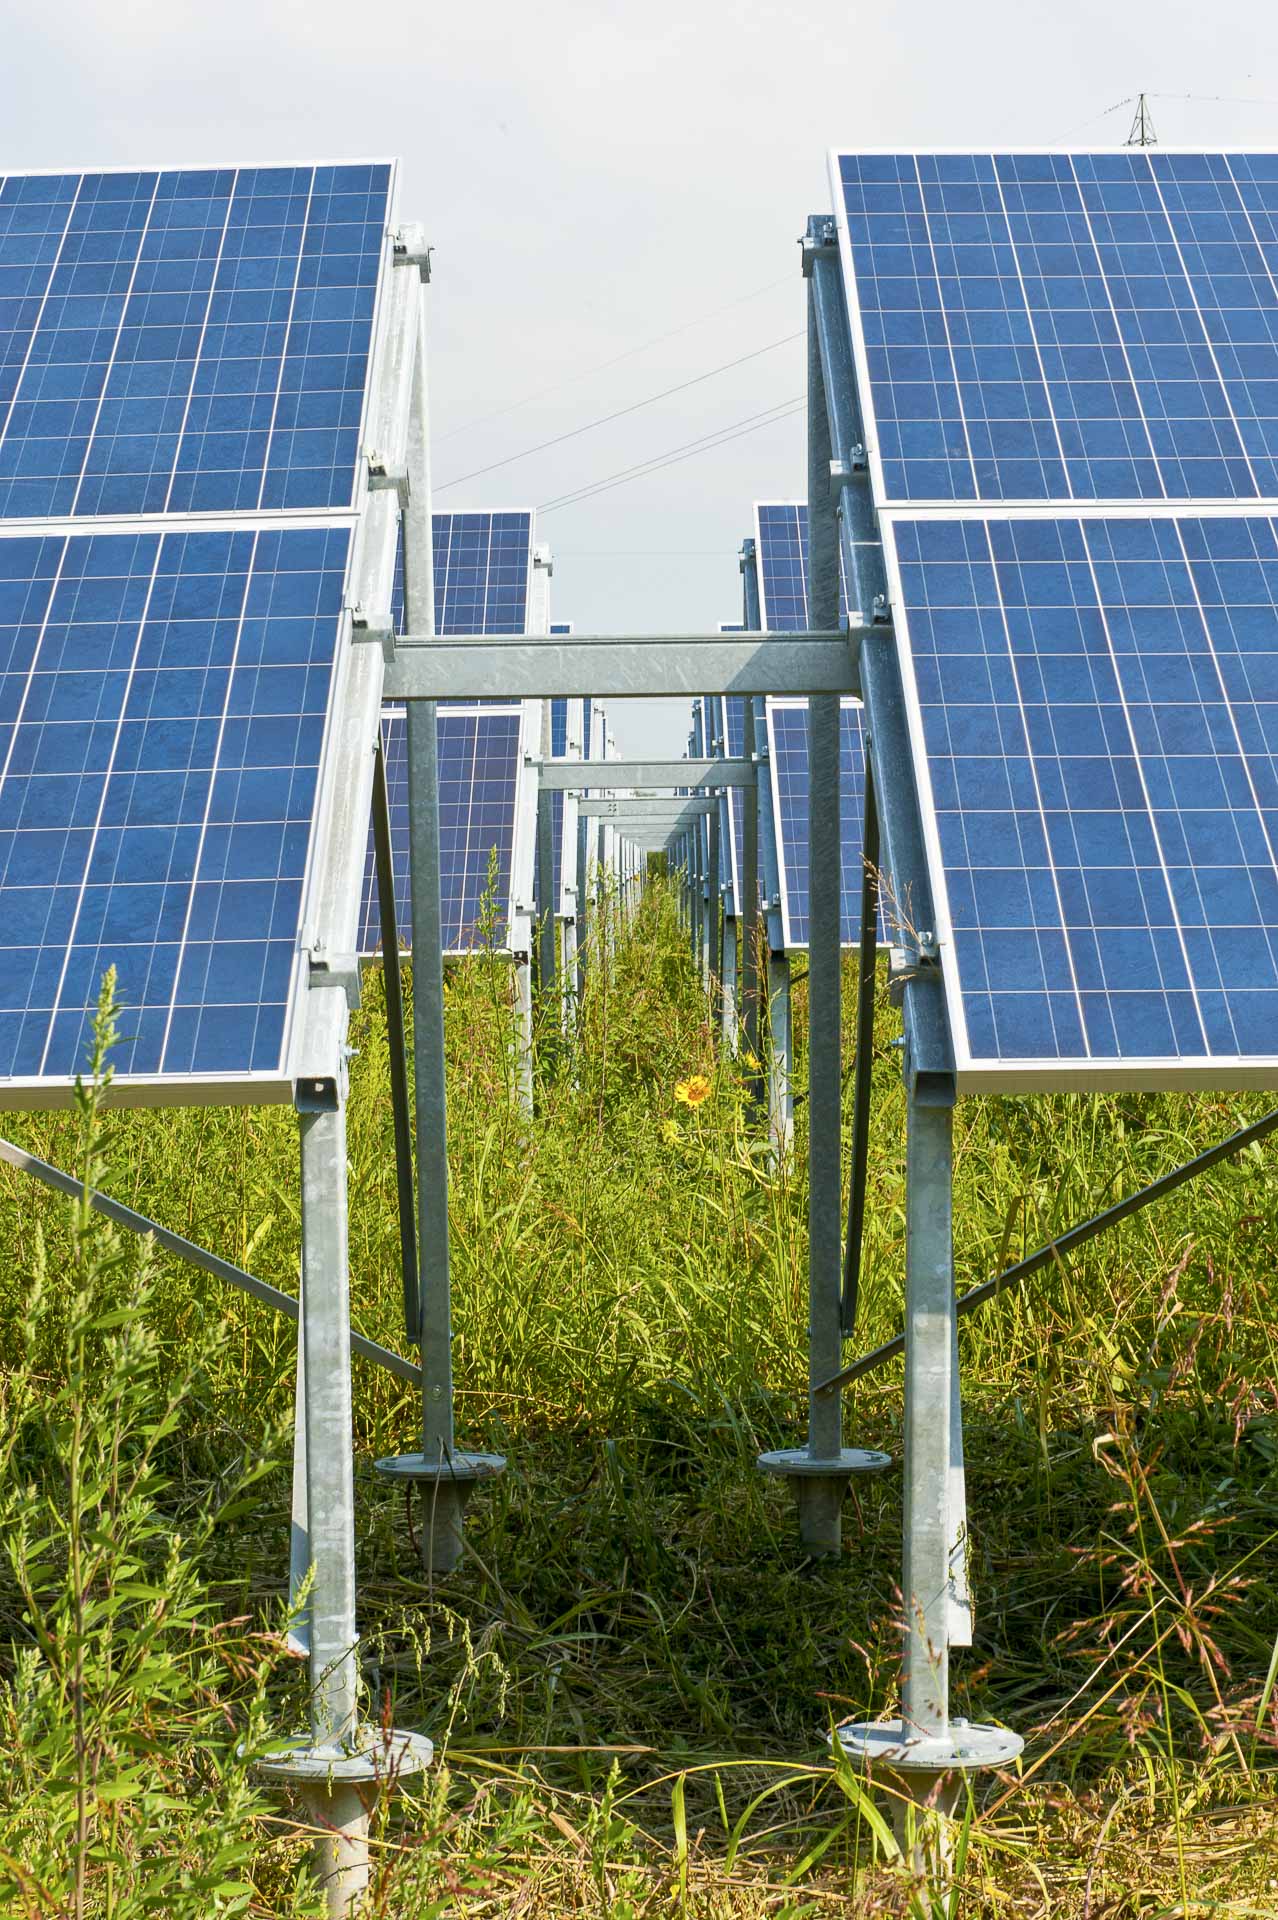 Impianto produzione energia solare fotovoltaica rinnovabile sostenibile CVA Alessandria sud